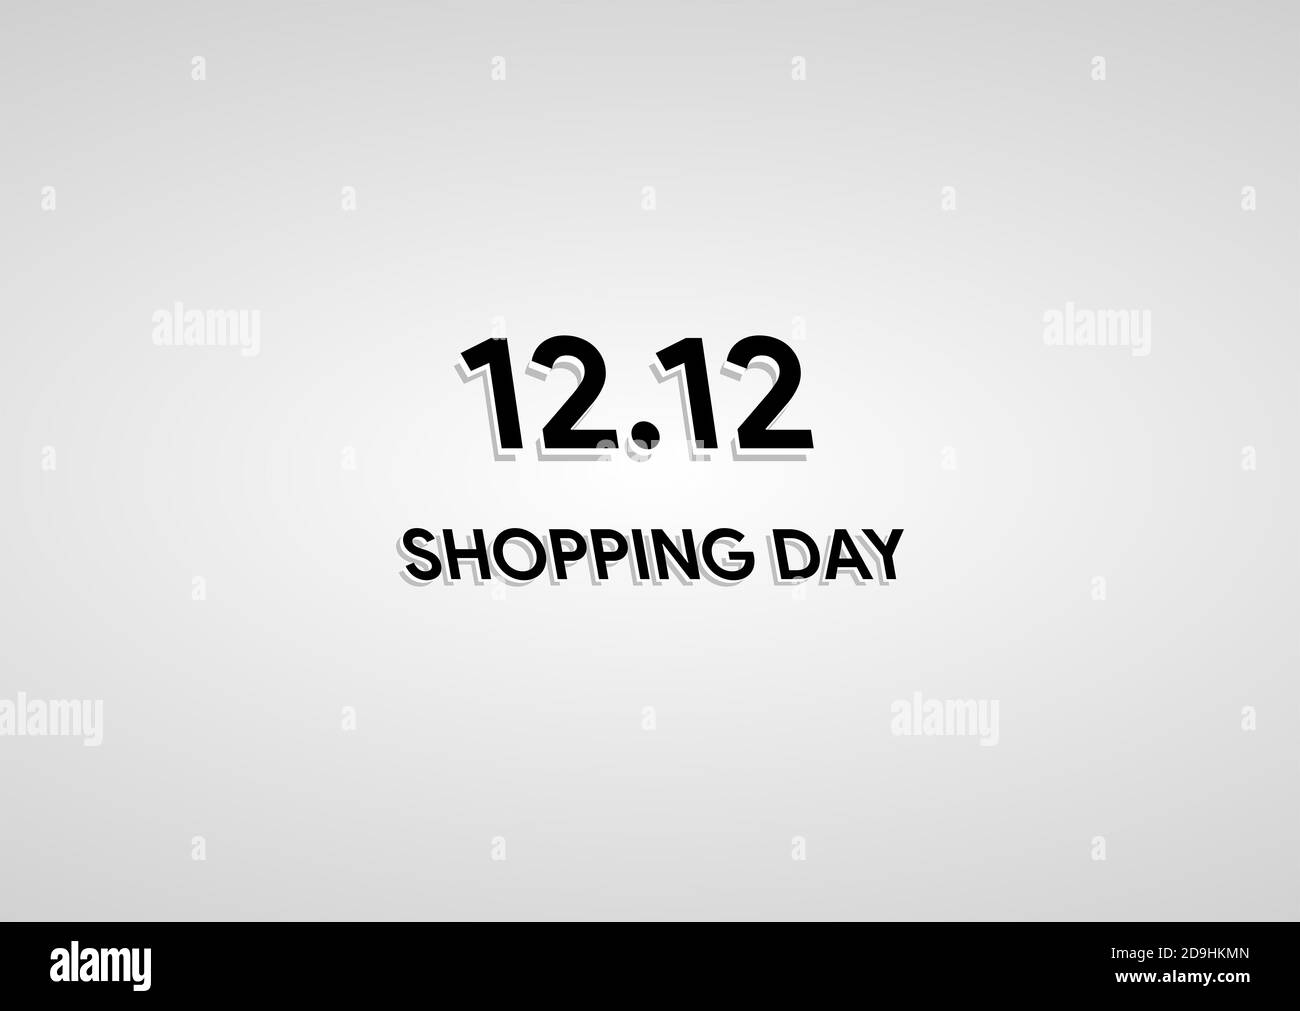 12.12 Einkaufstag Verkauf Poster oder Flyer Design. Global Shopping World Day Sale auf minimalistischem Hintergrund. 12.12 Verrückte Verkäufe online. Stockfoto